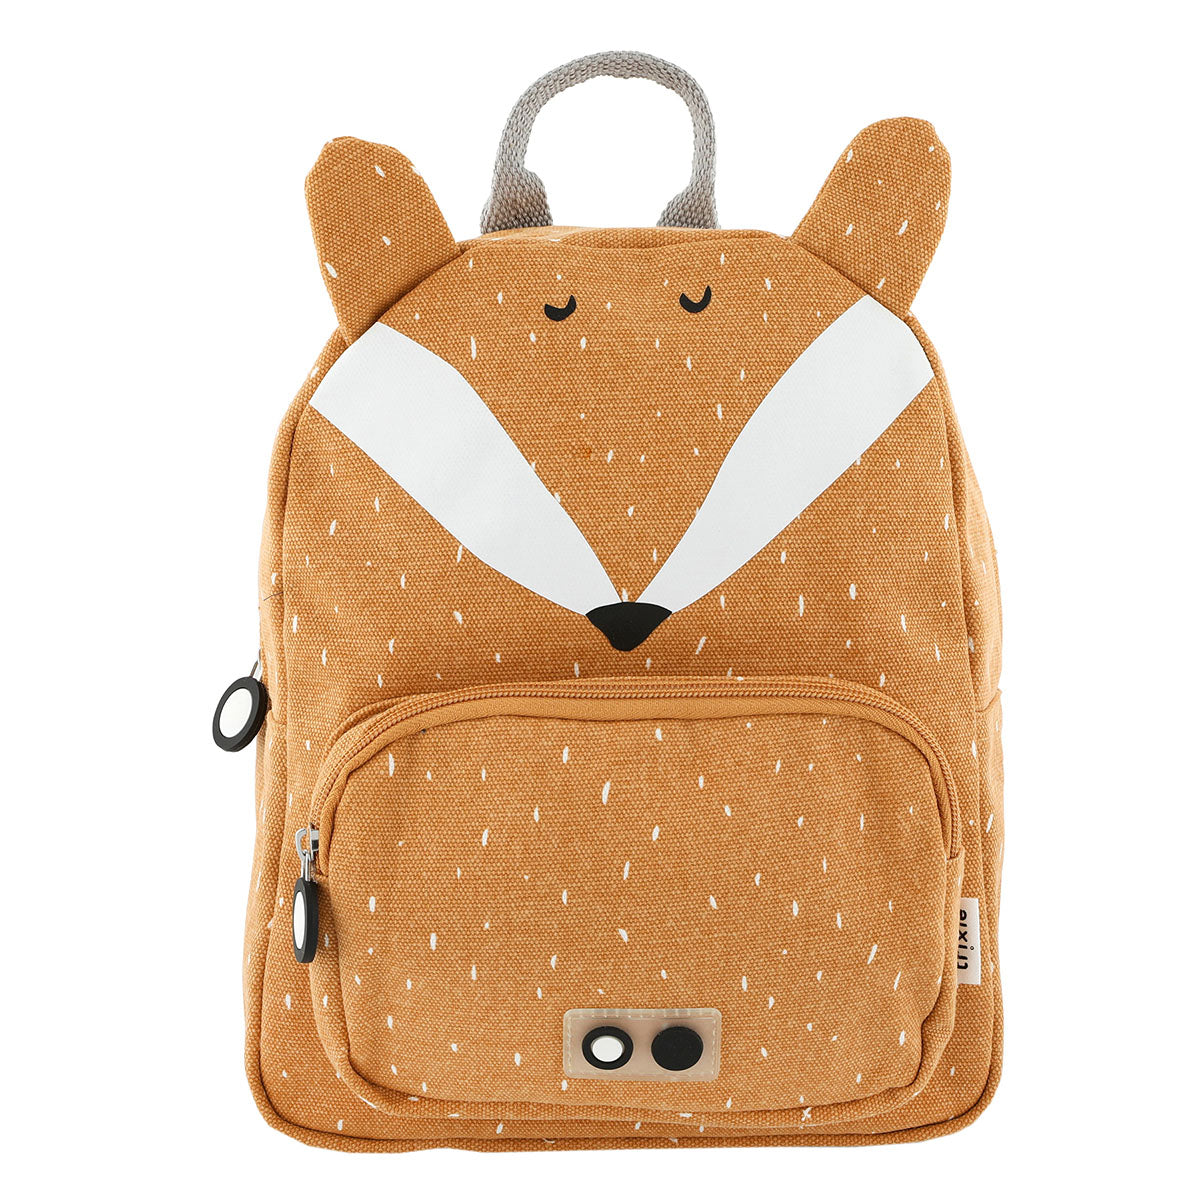 Met de Trixie Mr. Fox rugzak klein ben je klaar voor avontuur! In deze oranje schooltas kan je al je spulletjes kwijt voor een dagje weg. De oranje rugzak komt in de vorm van een leuk vosje. VanZus.